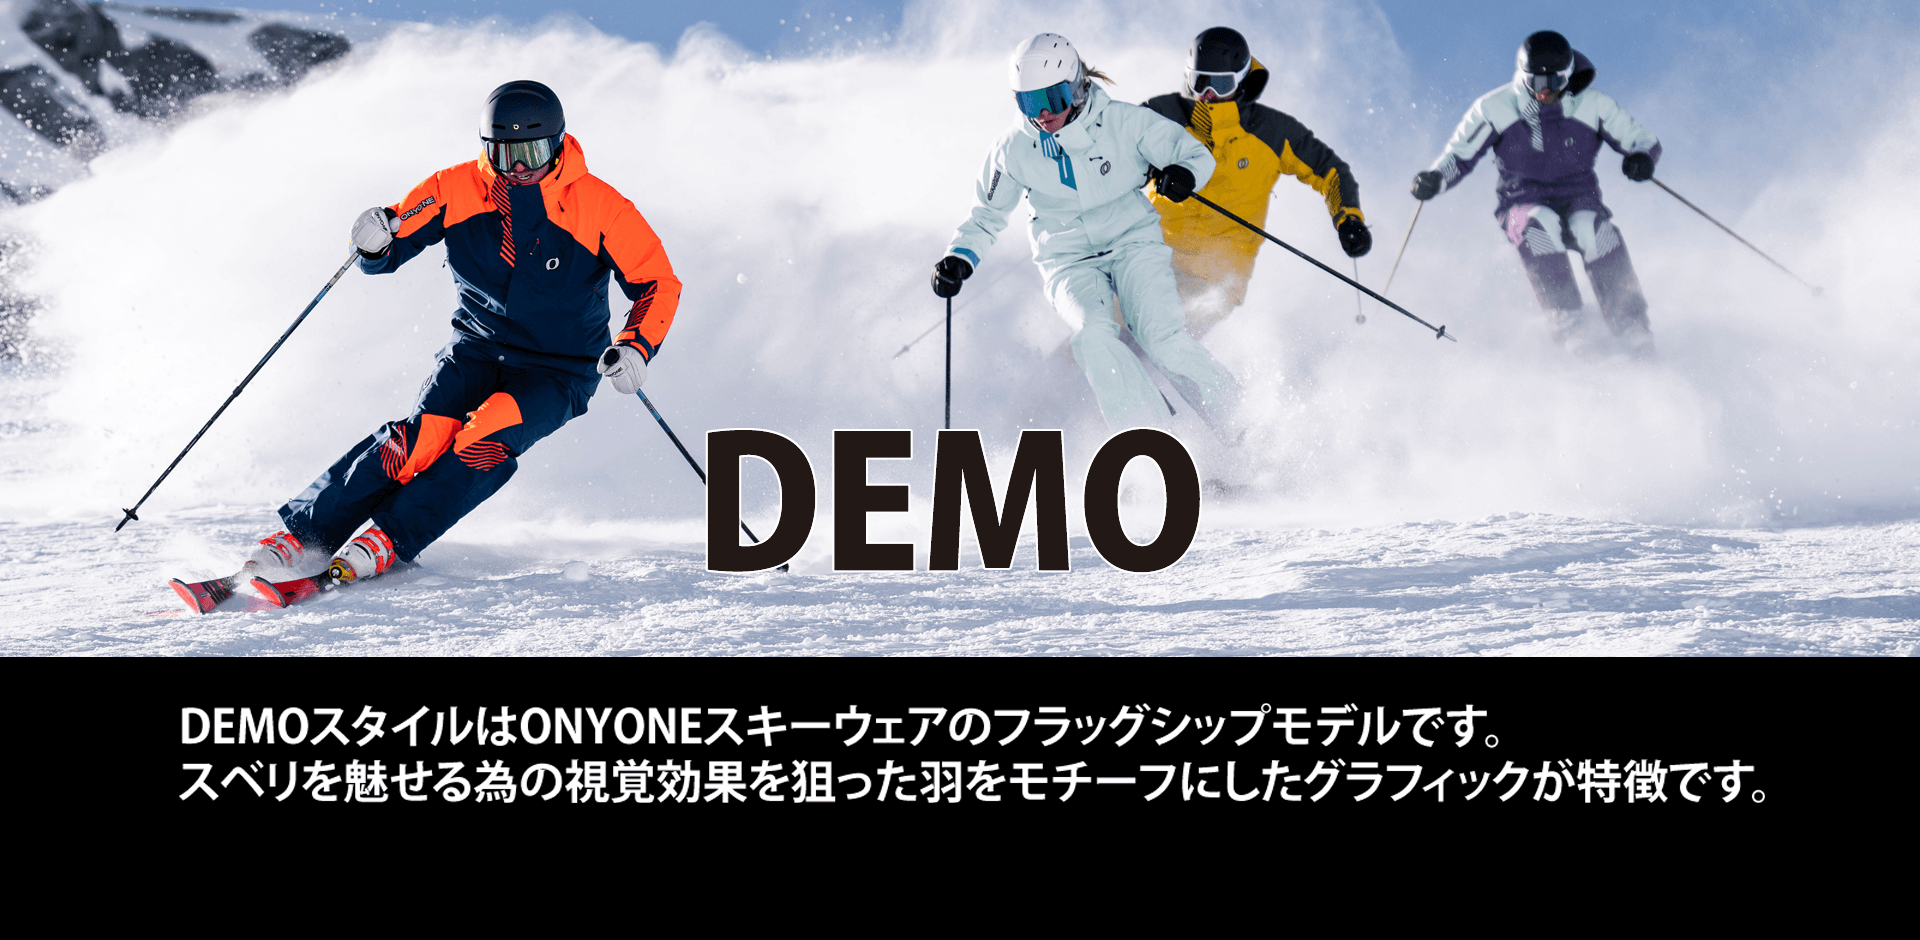 DEMO　オーダー締め切り2023年6月25日 DEMOスタイルはONYONEスキーウェアのフラッグシップモデルです。スベリを魅せる為の視覚効果を狙った羽をモチーフにしたグラフィックが特徴です。